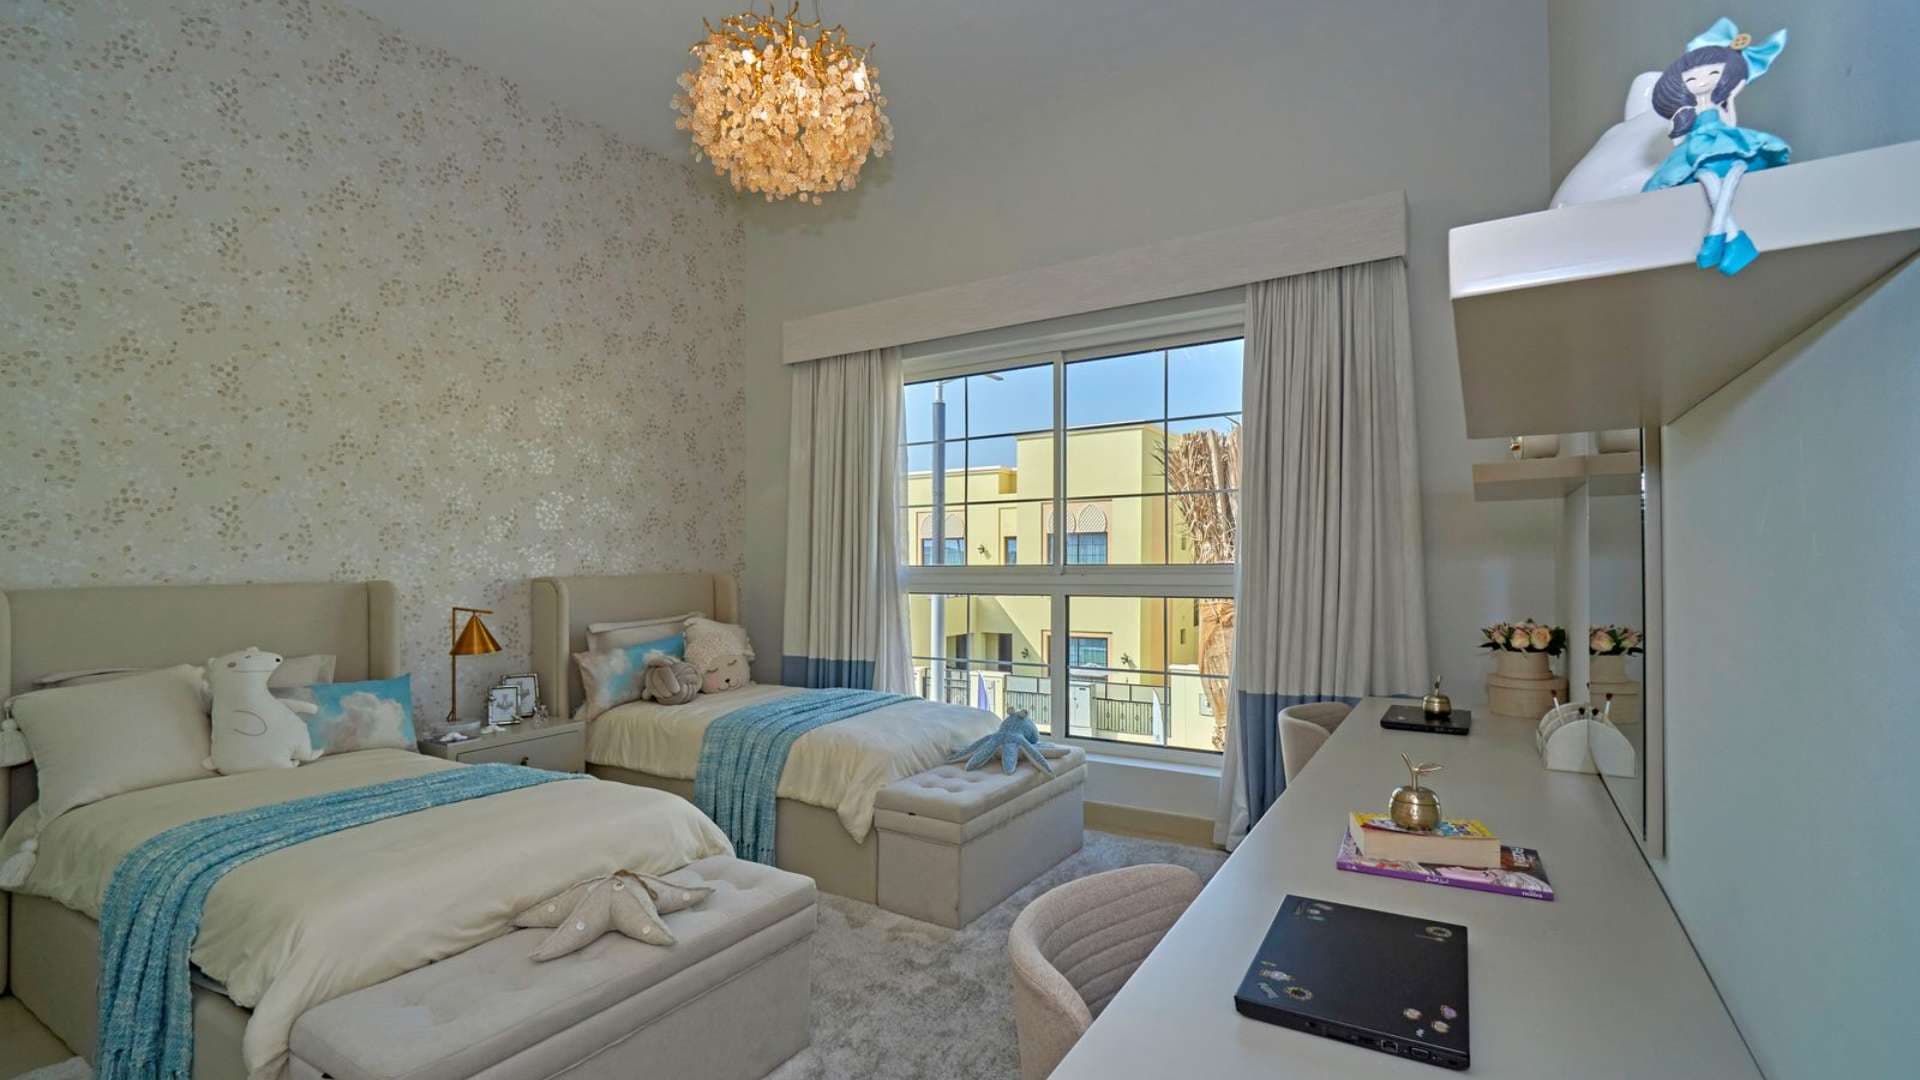 5 Bedroom Villa For Sale Nad Al Sheba 1 Lp06886 24b680b29d320200.jpeg